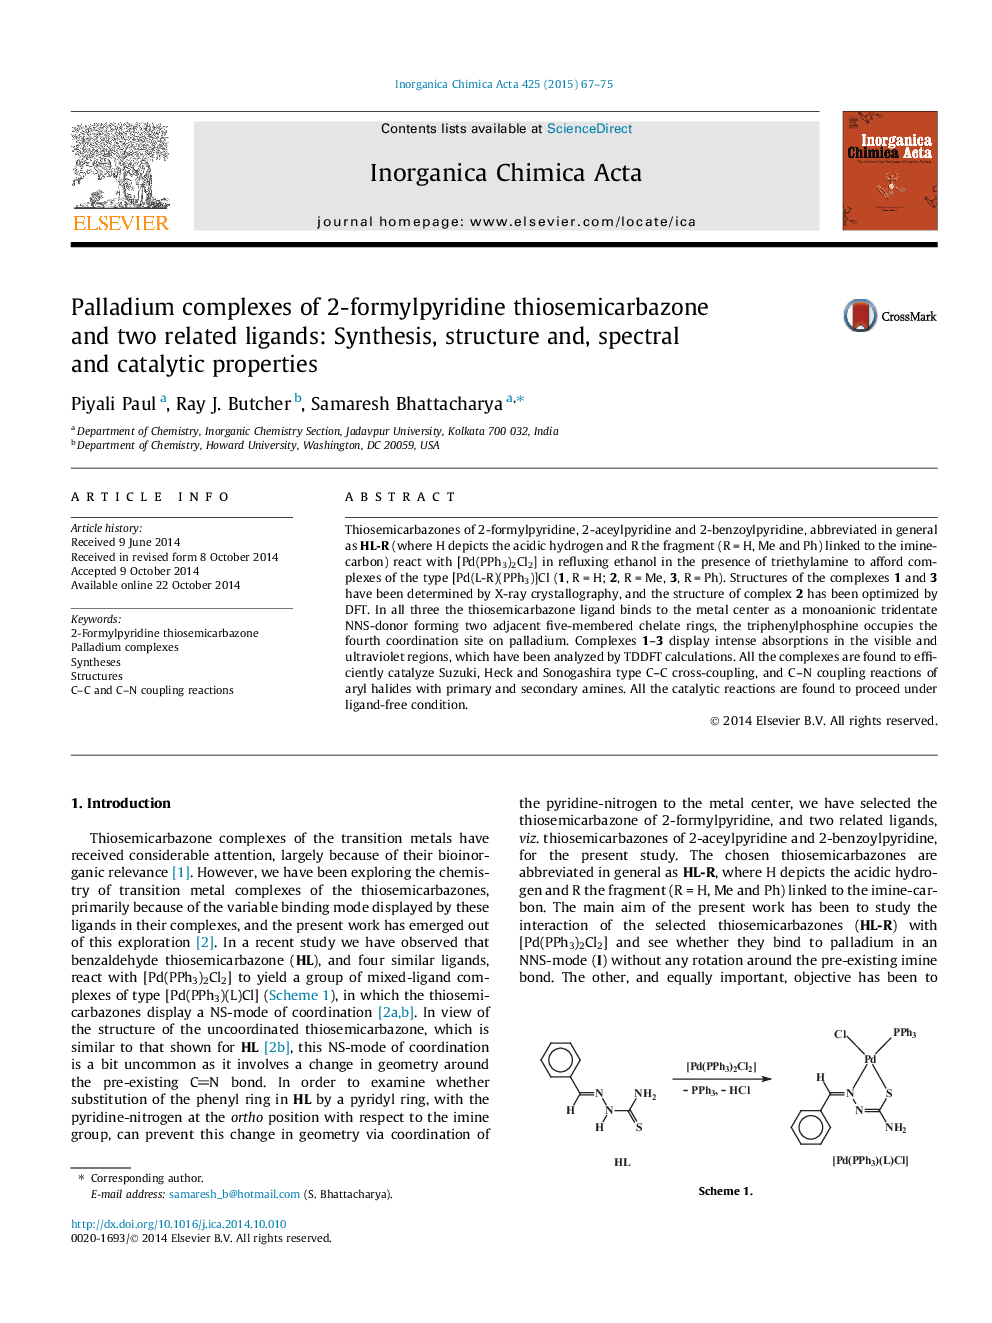 مجتمع های پالادیوم تیزیمیکاربازون 2-فرمول پرییدین و دو لیگاند مرتبط: سنتز، ساختار و خواص طیفی و کاتالیزوری 